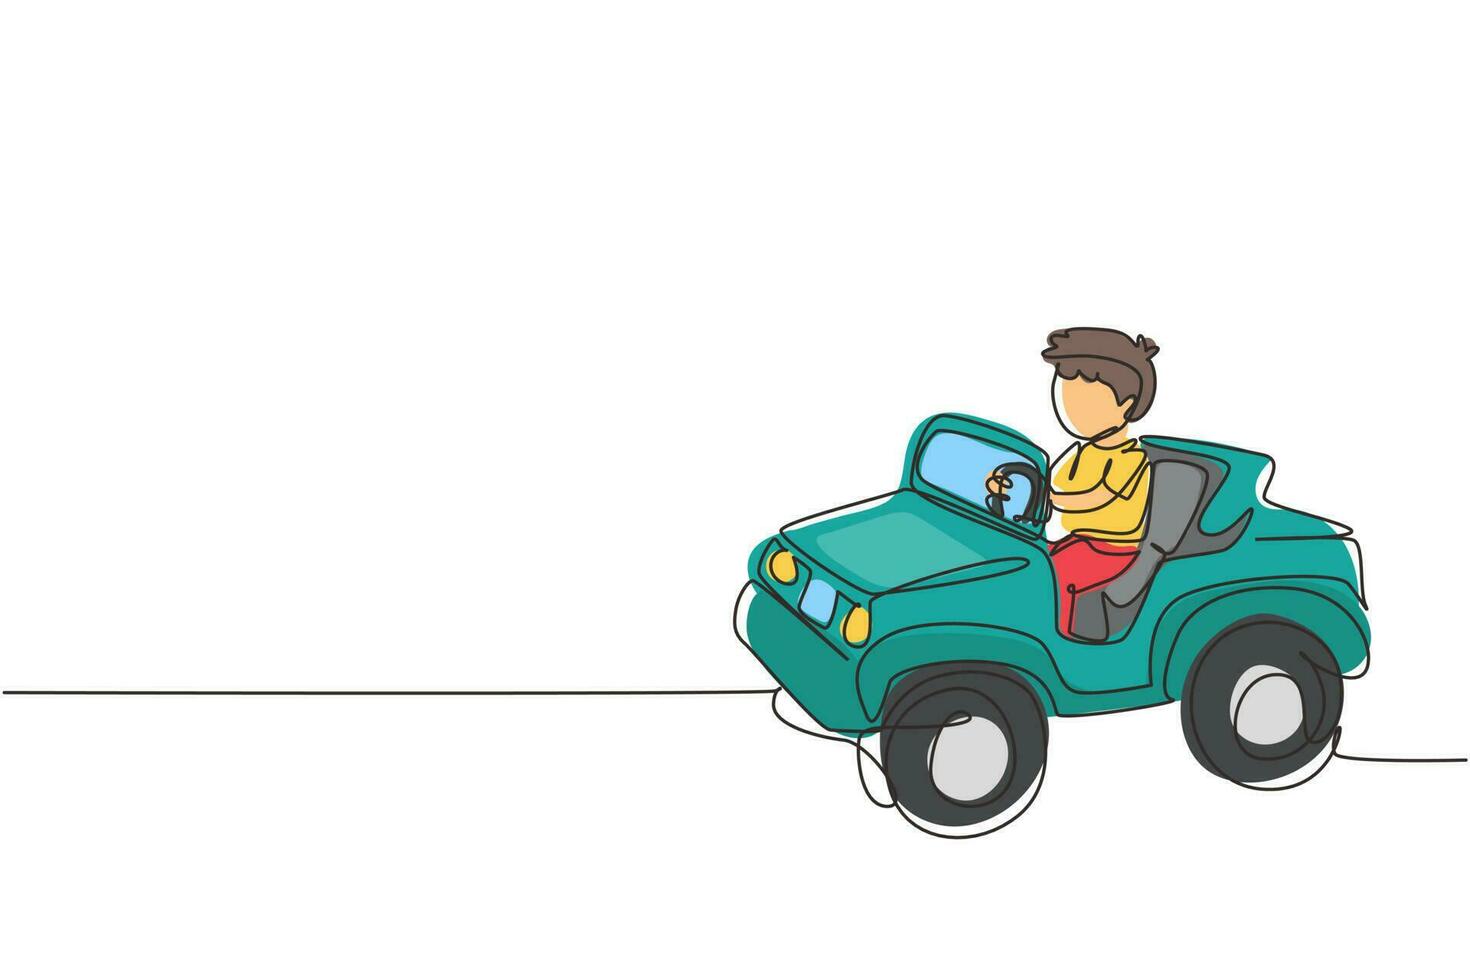 niño de dibujo de una sola línea conduciendo coche, niño lindo feliz. lindo niño sonriendo feliz conduciendo un coche de juguete. viaje de niños en coche pequeño. ilustración de vector gráfico de diseño de dibujo de línea continua moderna